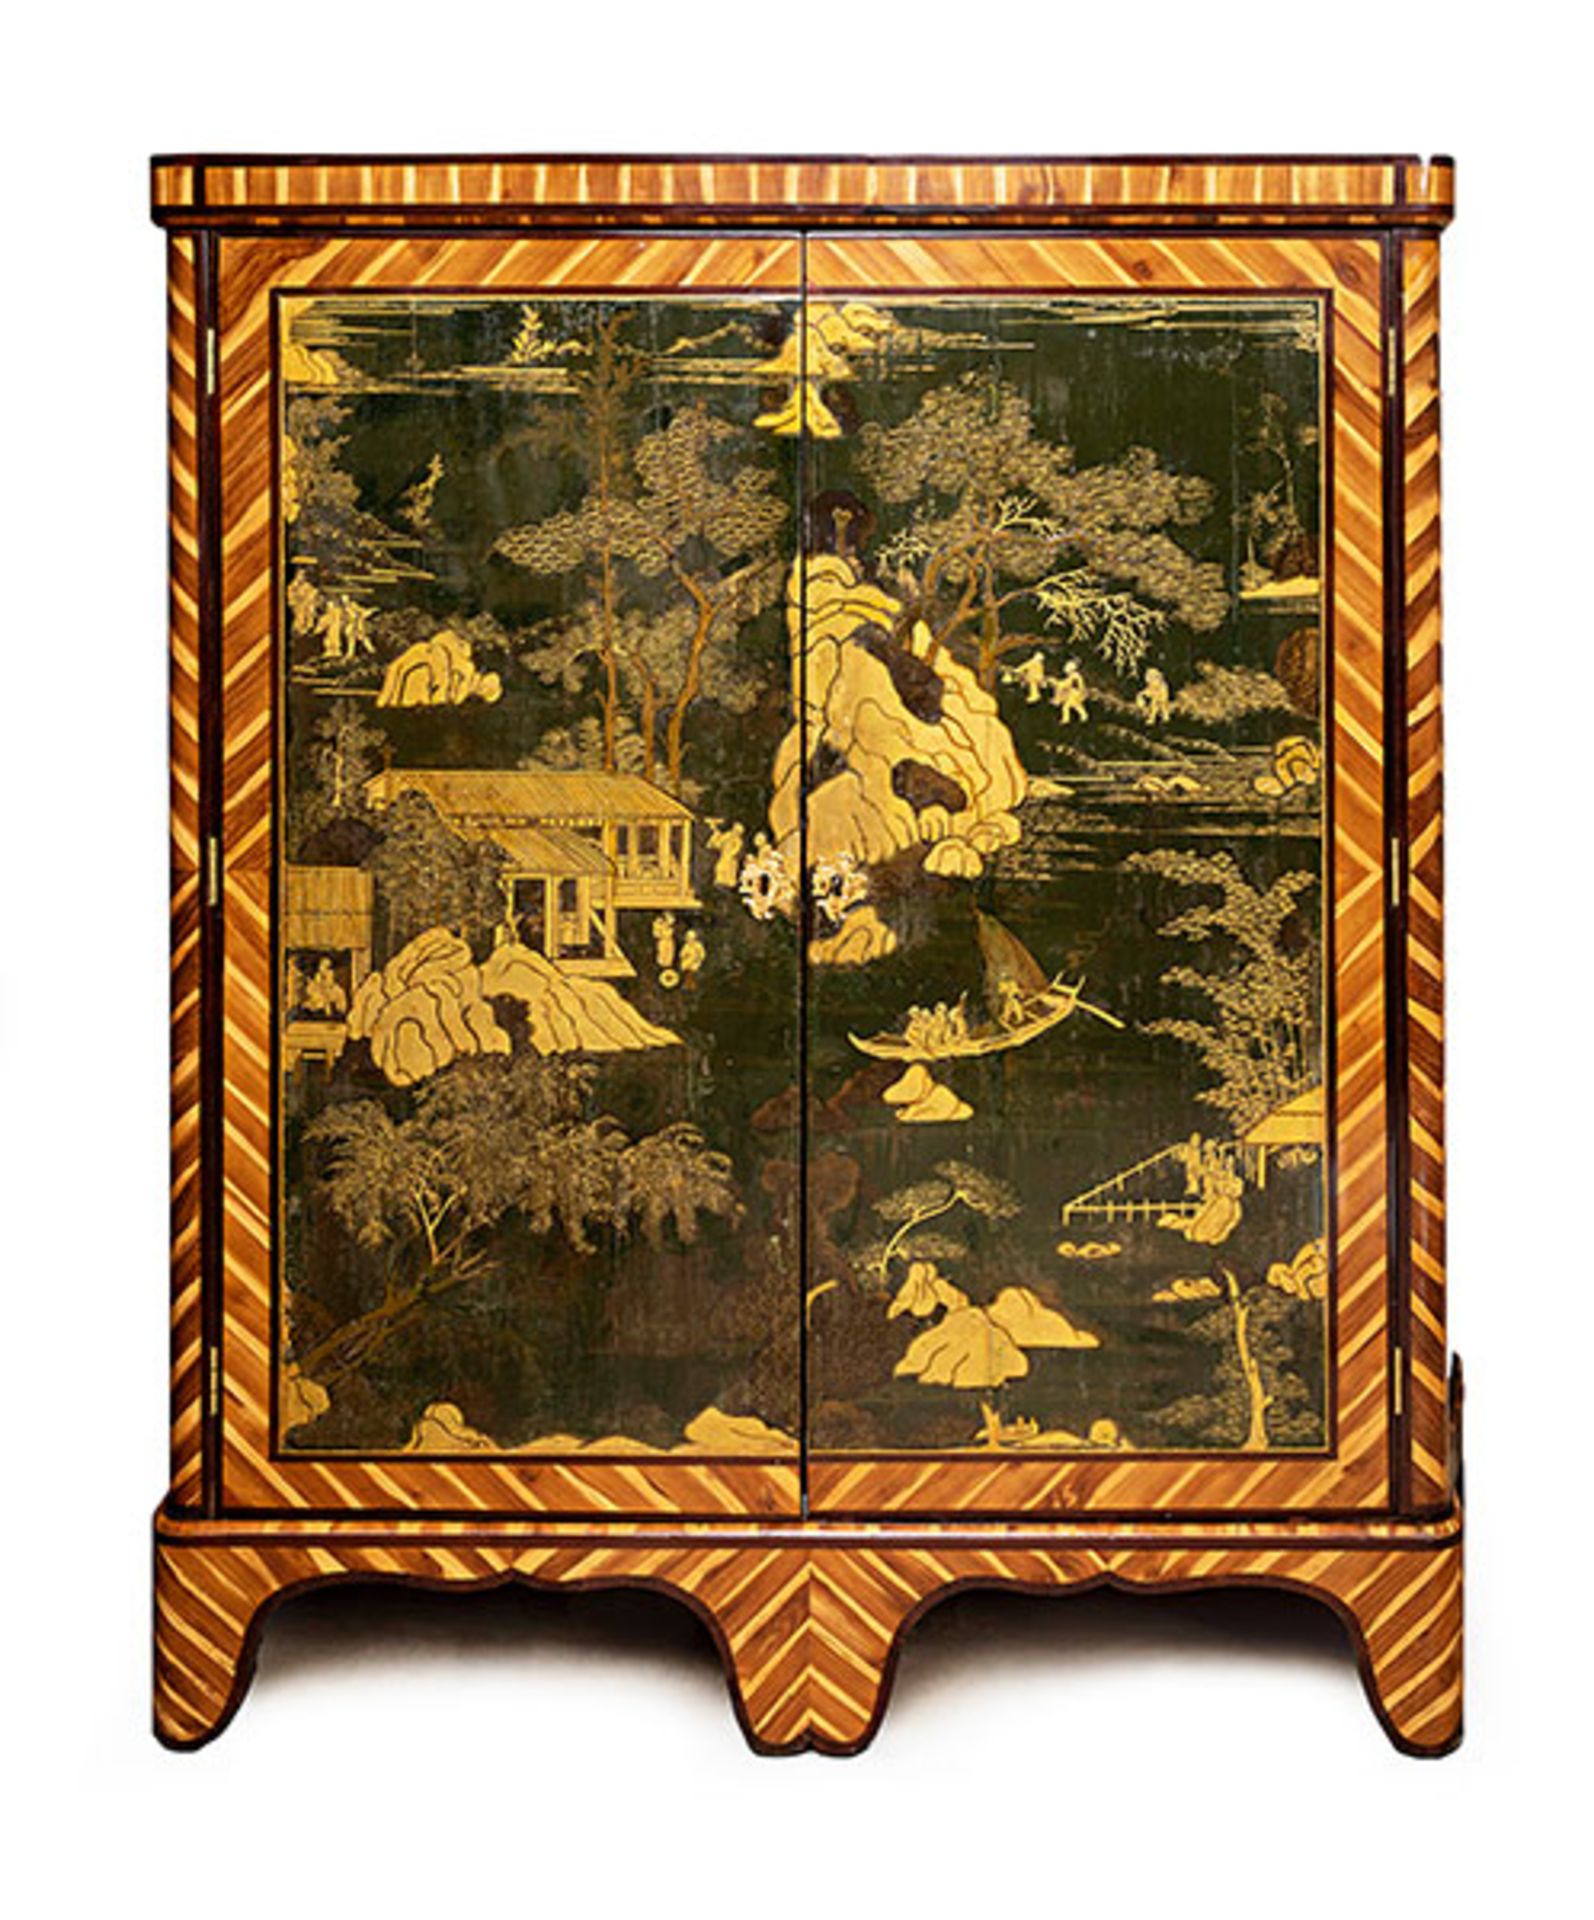 Chinoiserie Schränkchen 147 x 140 x 40 cm. Frankreich, 18. Jahrhundert. Holz, gefasst, lackiert.